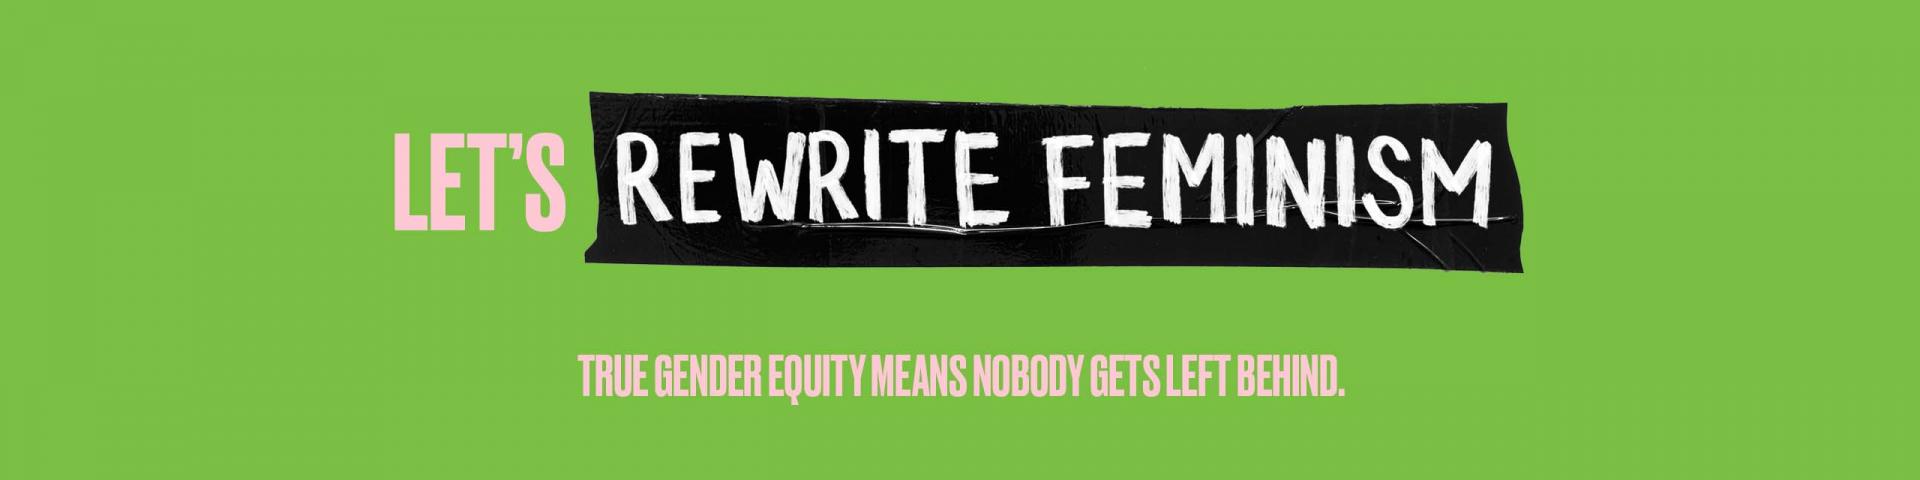 Let's rewrite feminism. True gender equity leaves nobody behind